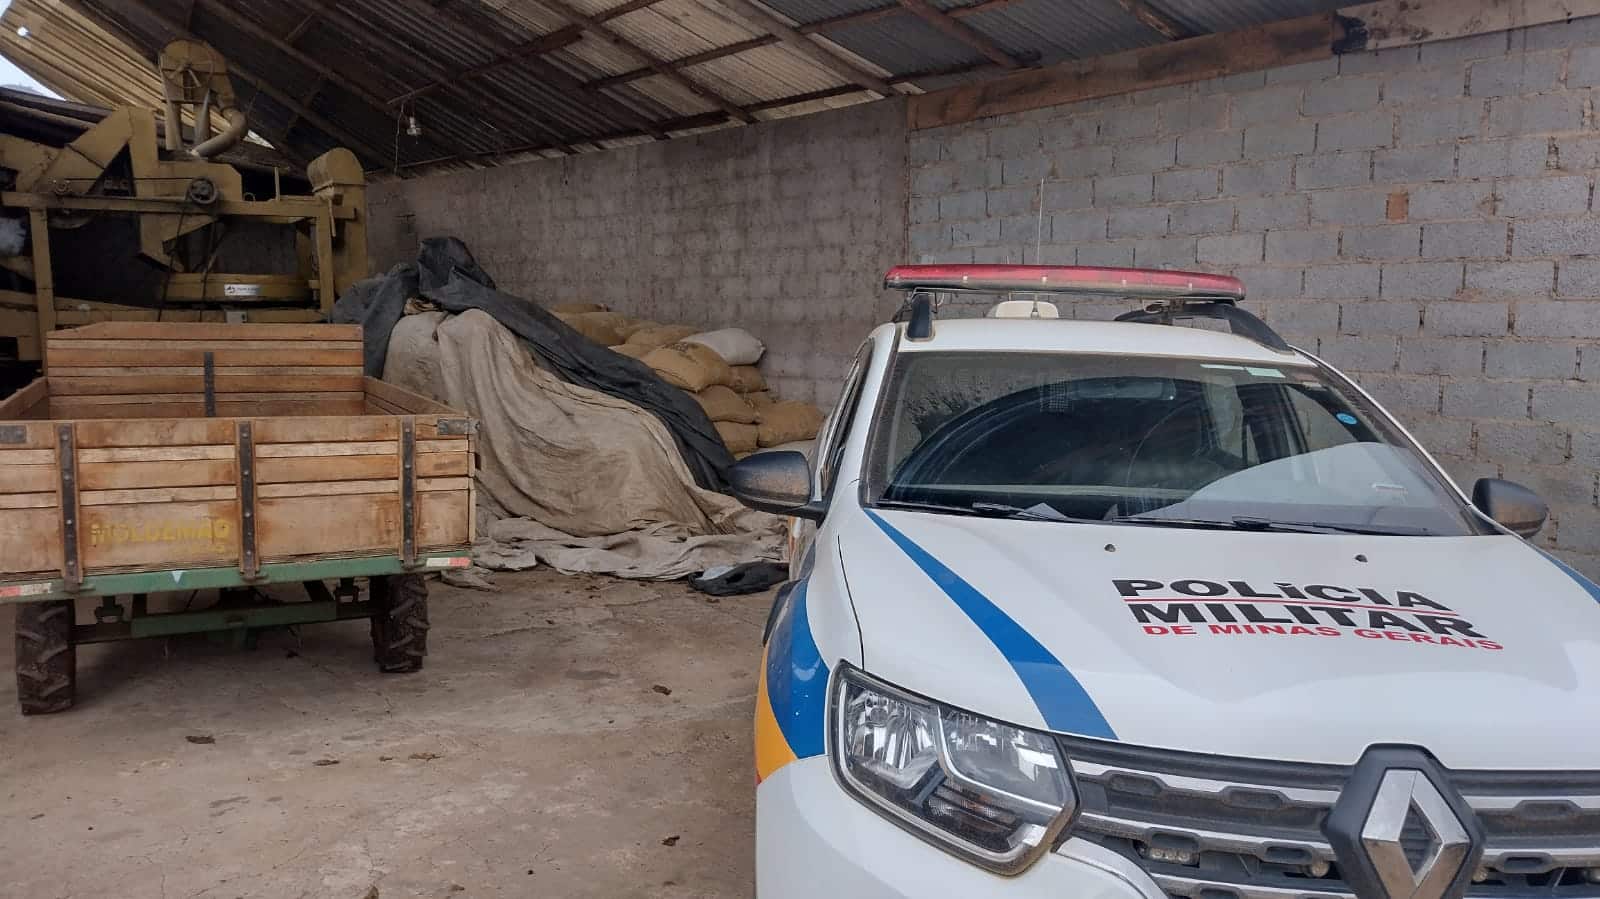 Polícia recupera em Iúna 120 sacas de café roubadas em Minas Gerais